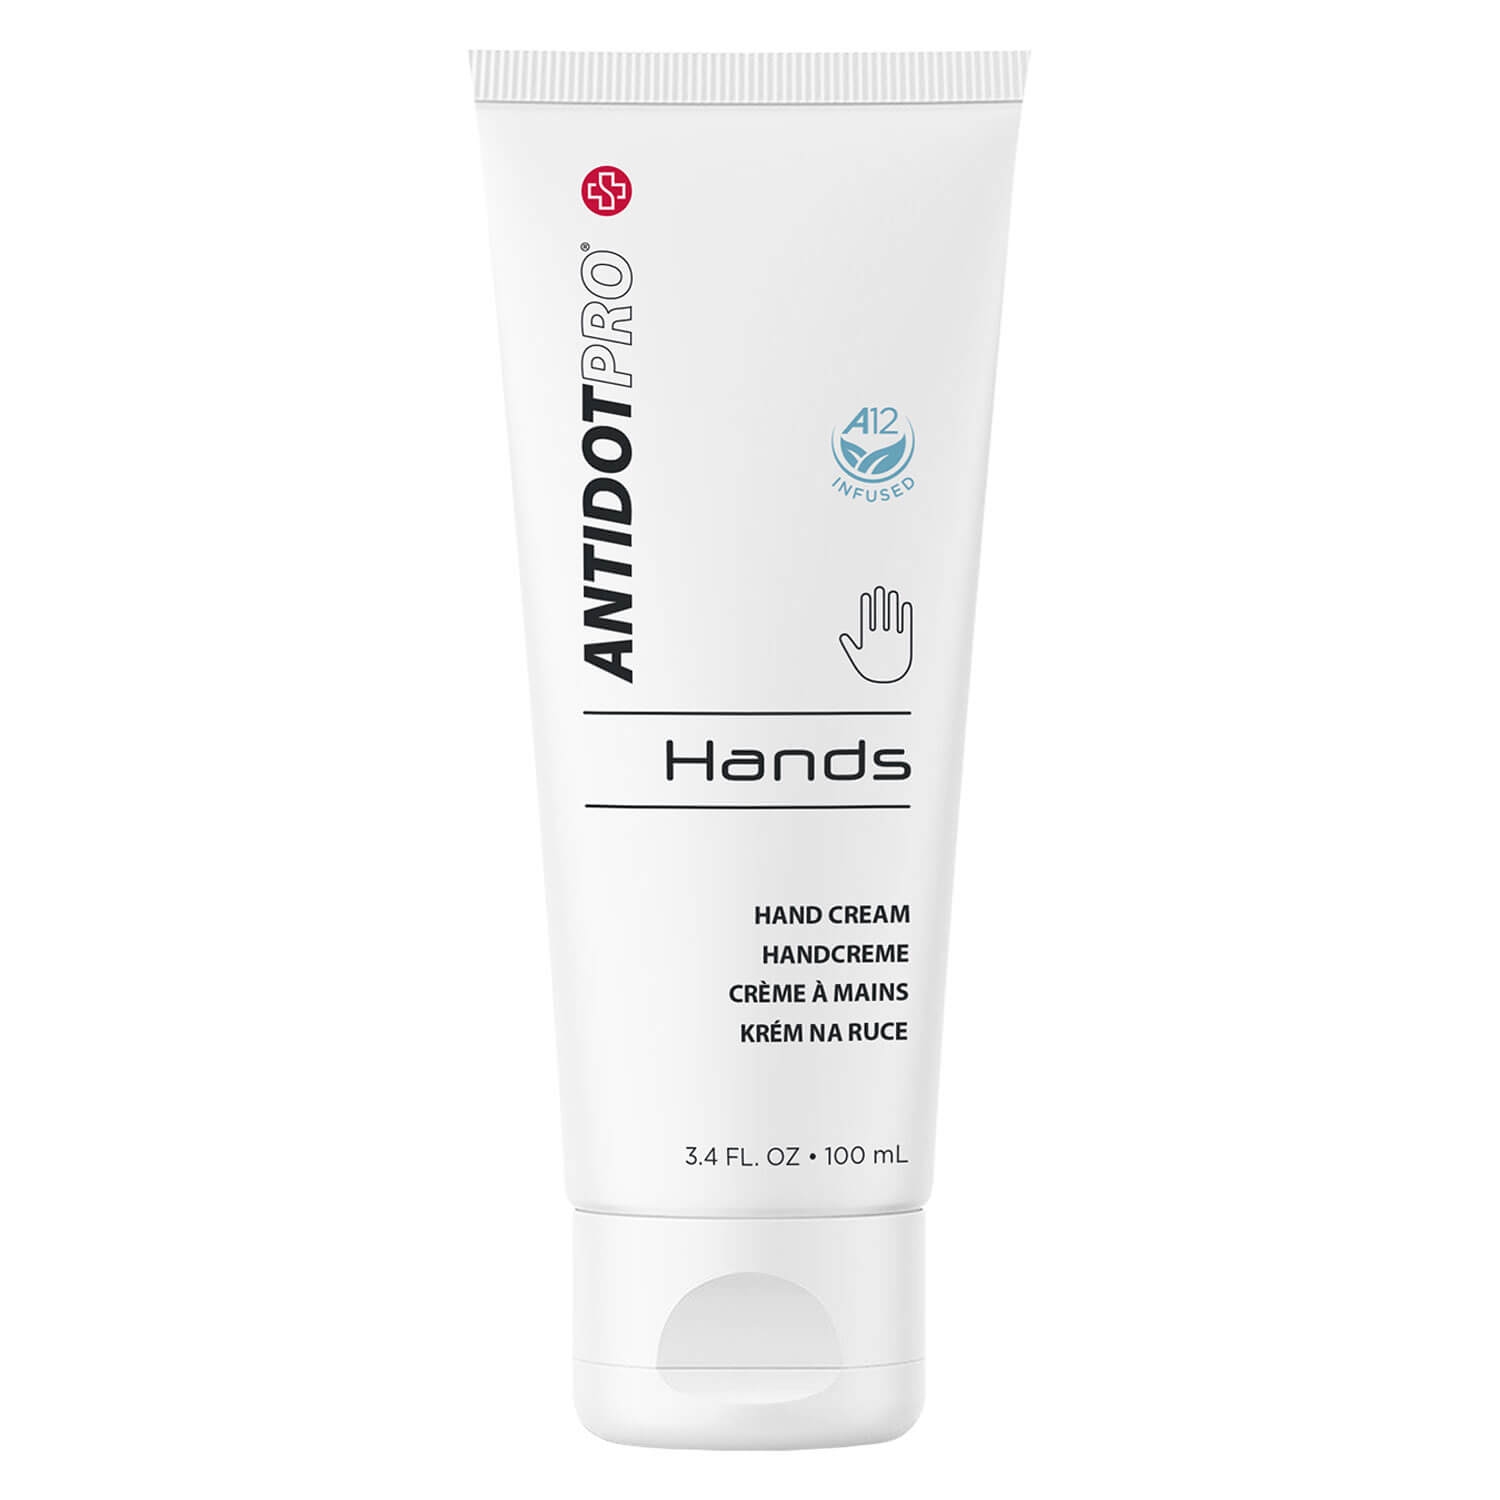 Produktbild von AntidotPro - Hands Hand Cream